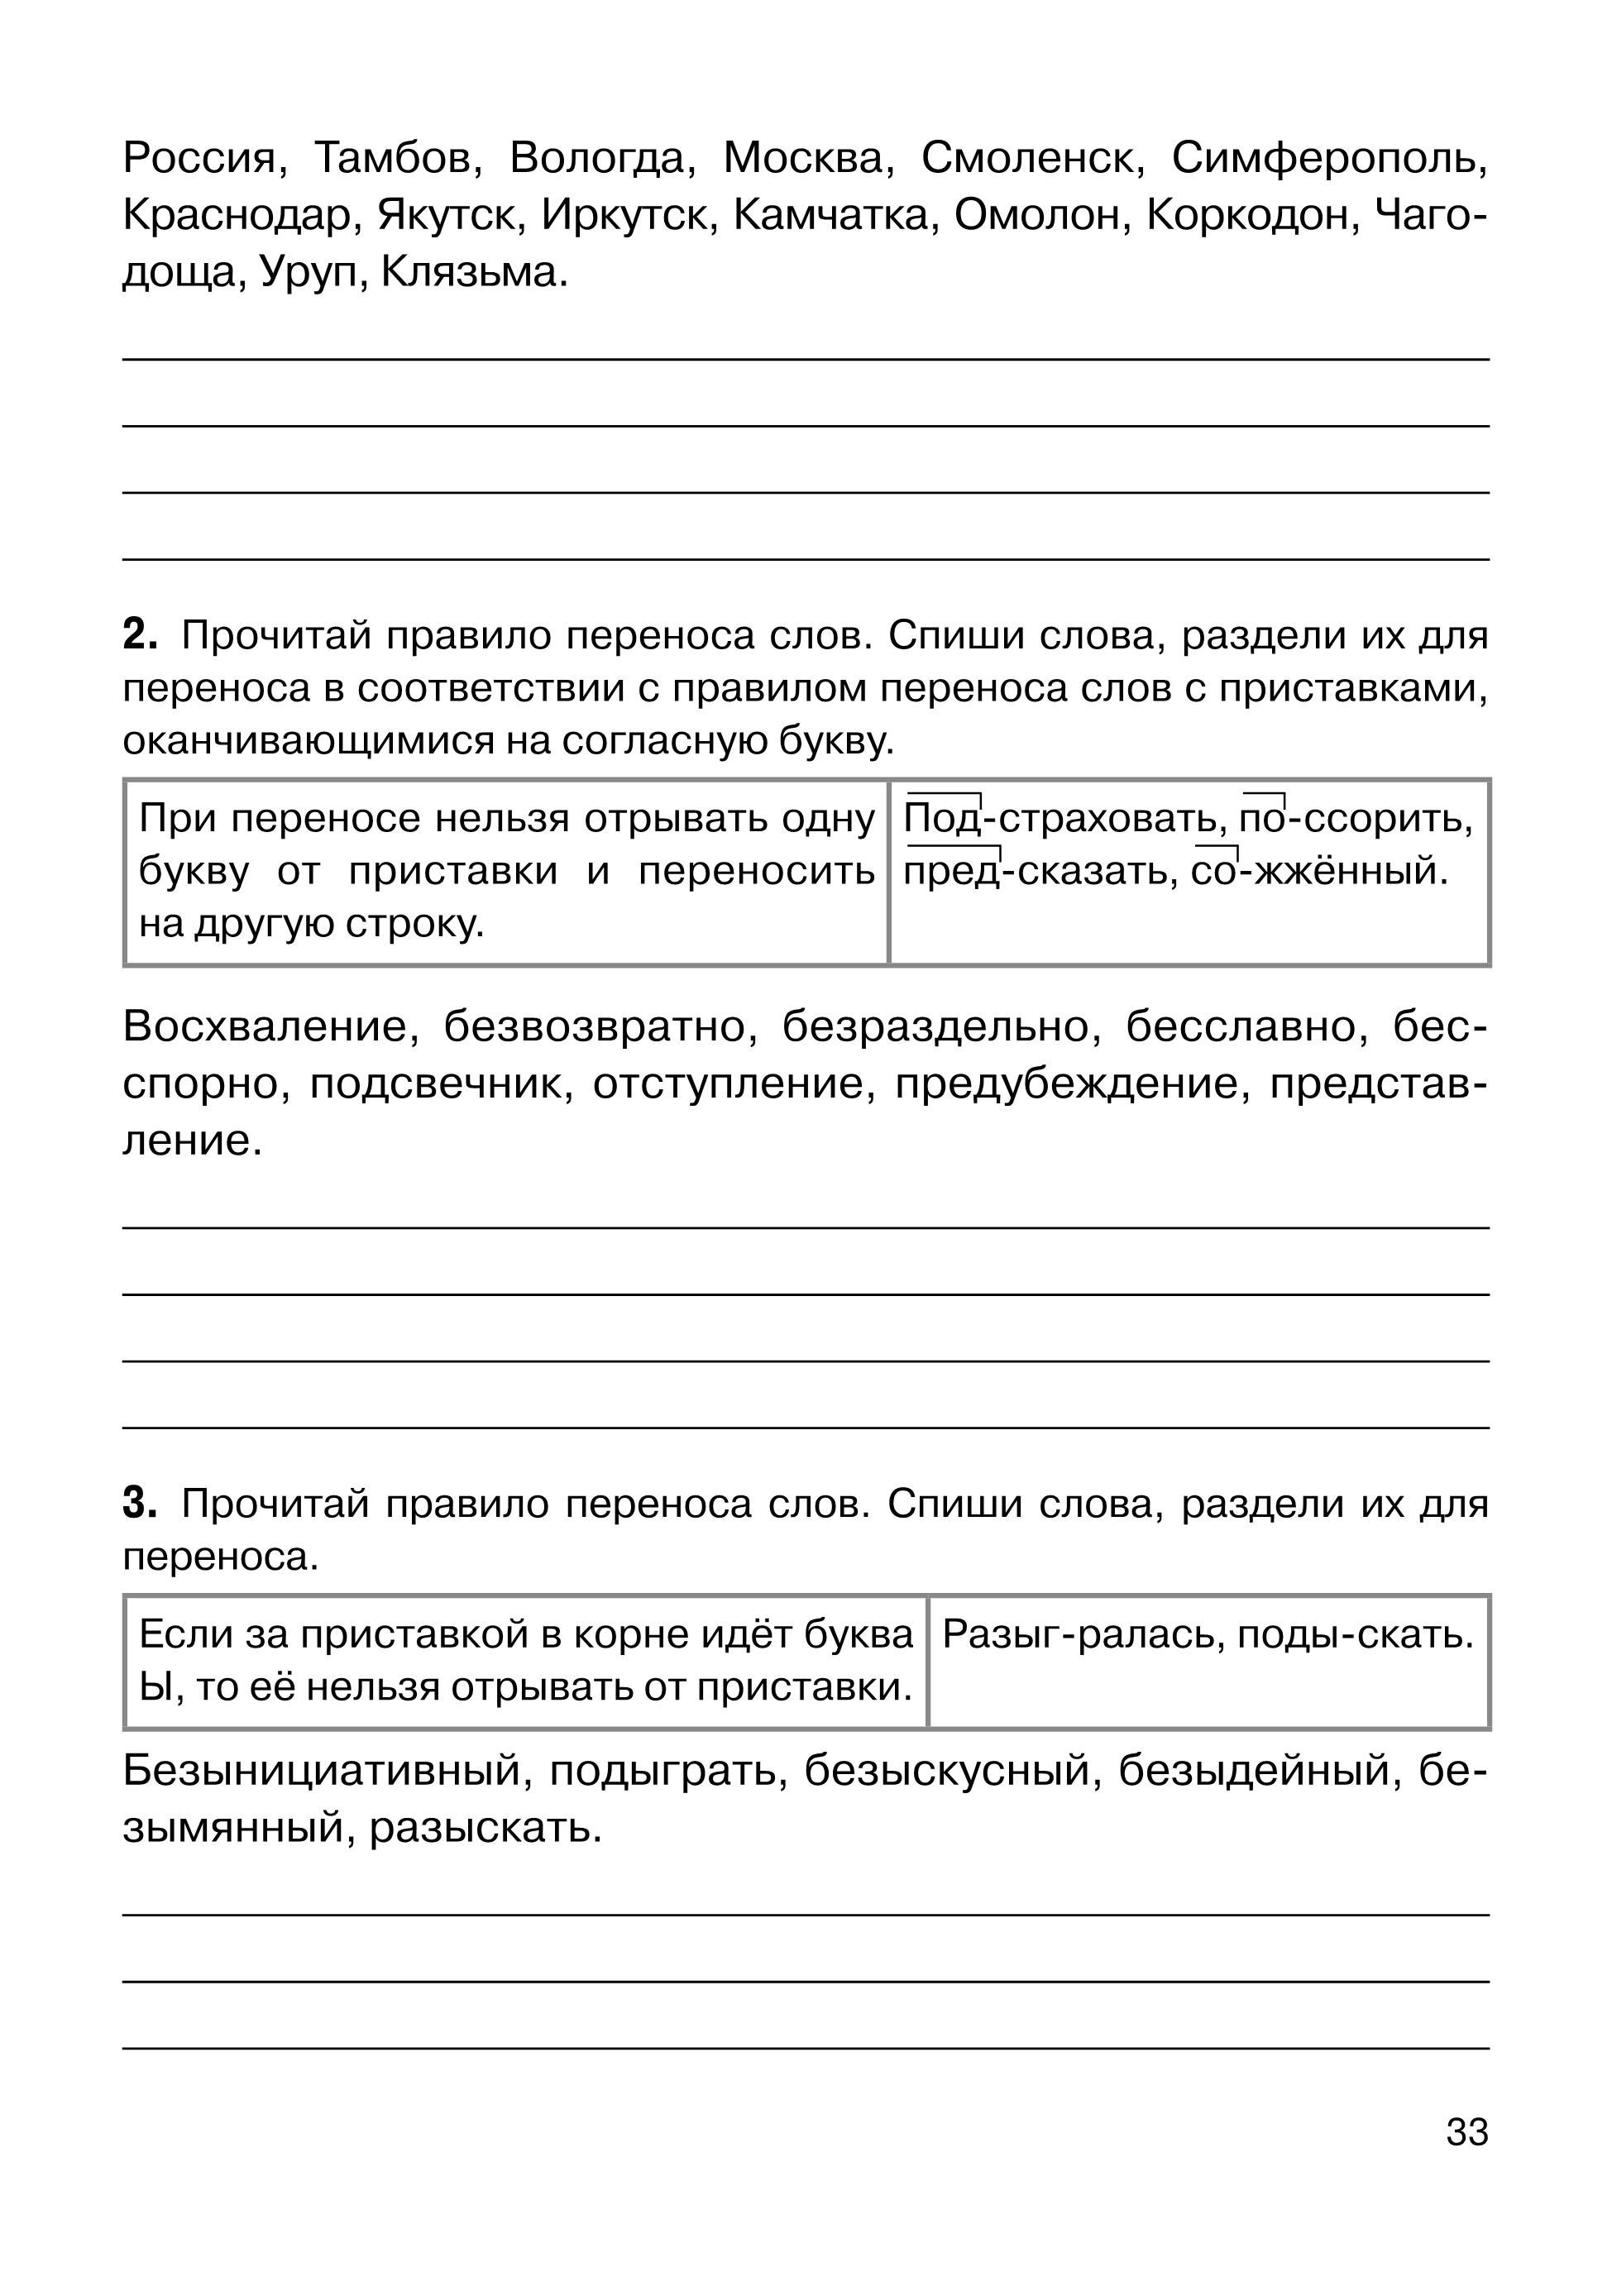 Русский язык. ВПР. 6-й класс. 10 тренировочных вариантов. Изд. 3-е